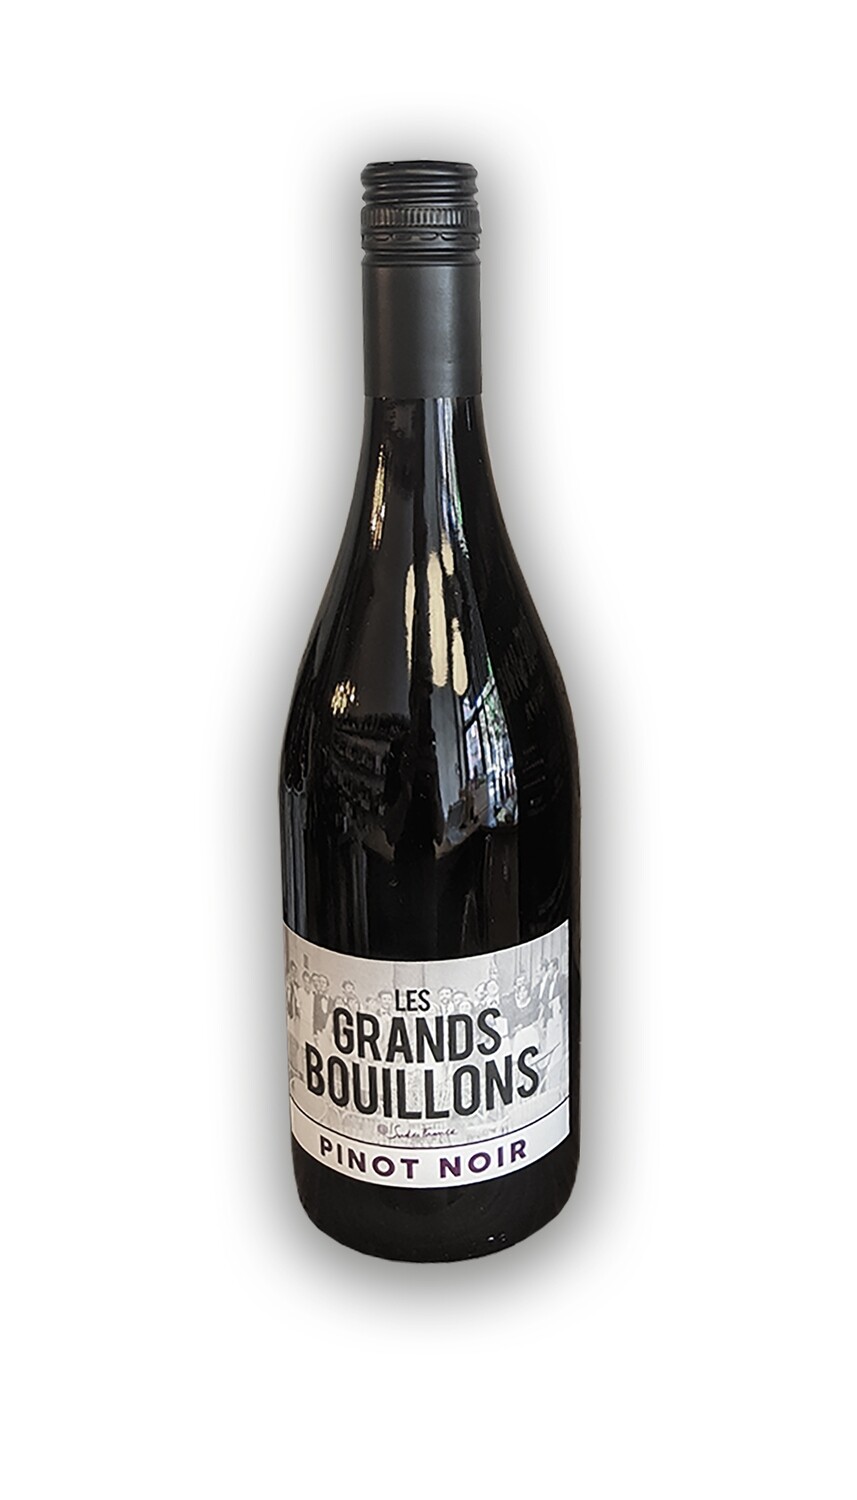 Les Grands Bouillons - Pinot Noir 2018